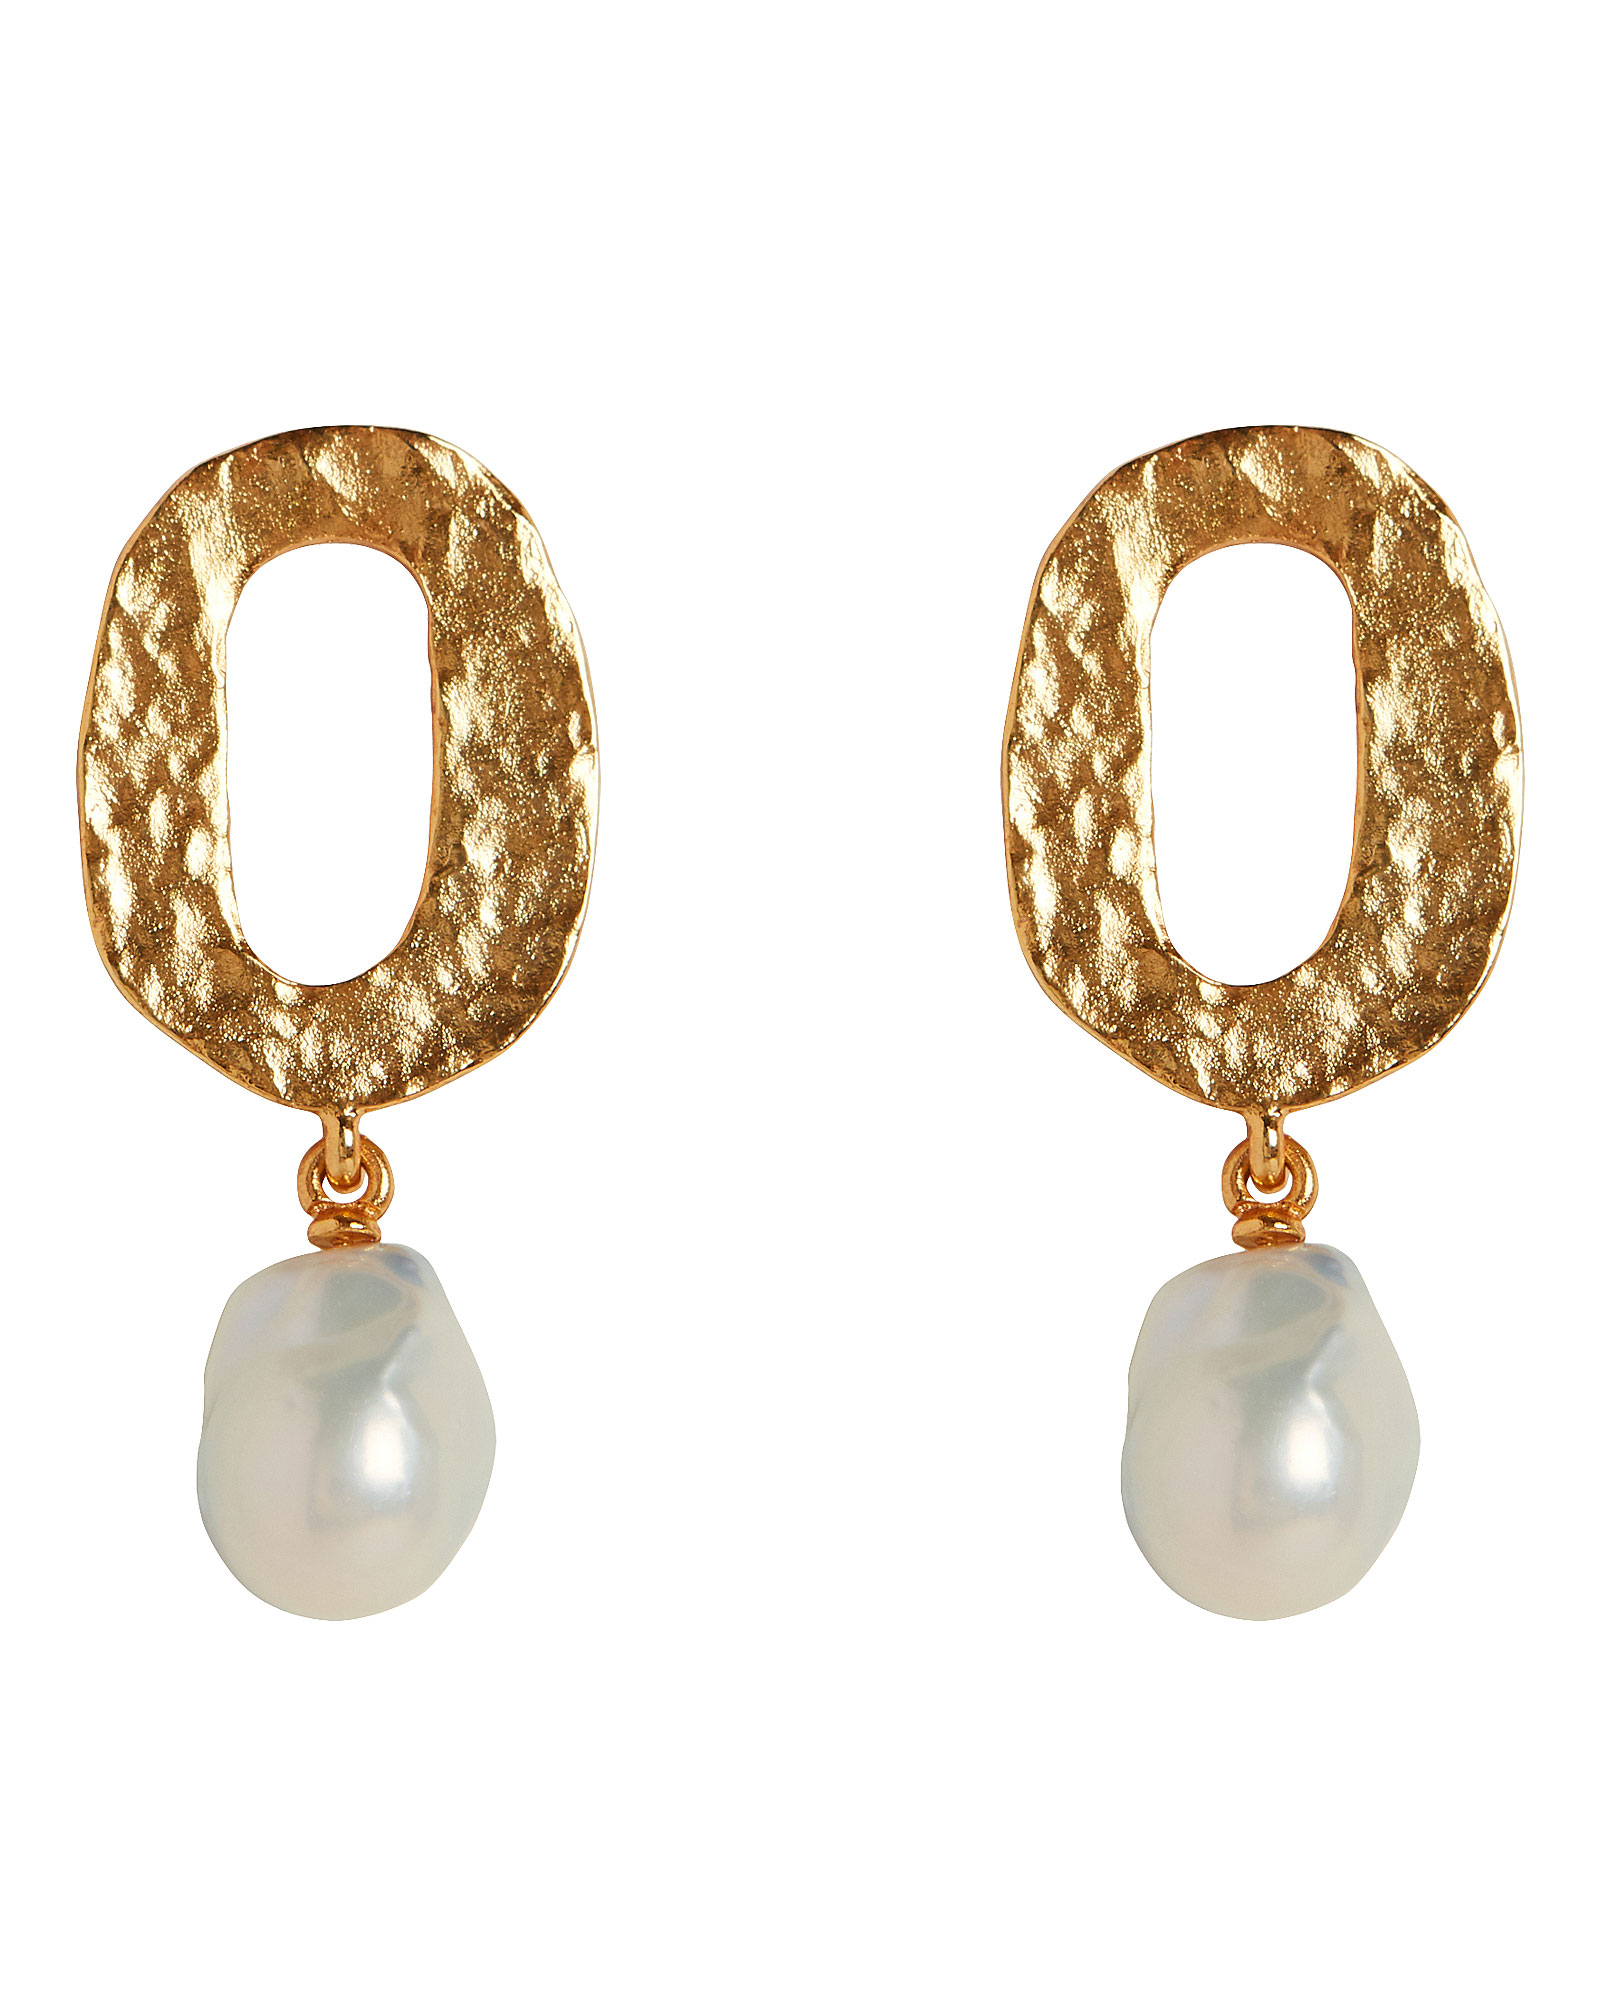 Oscar de la Renta | Baroque Pearl Hammered Gold Earrings | INTERMIX®